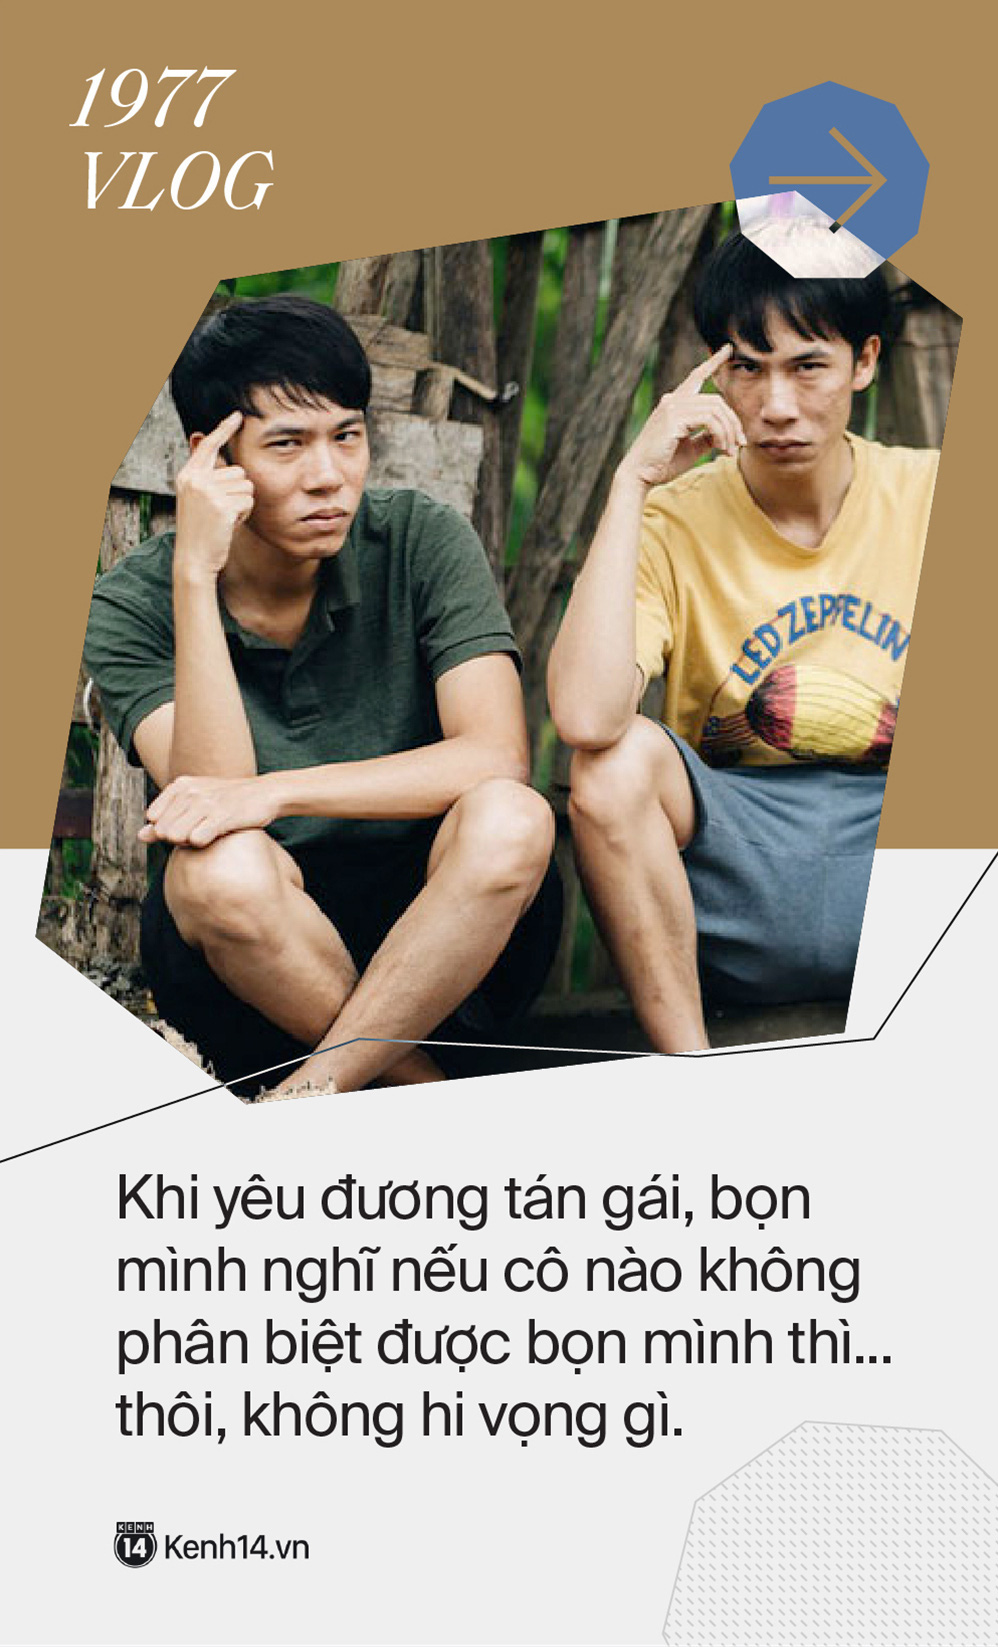 Tuyển tập phát ngôn nghe cái nhớ luôn của Cris Phan, Giang ơi, 1977 Vlog cùng loạt Youtuber đình đám - Ảnh 29.